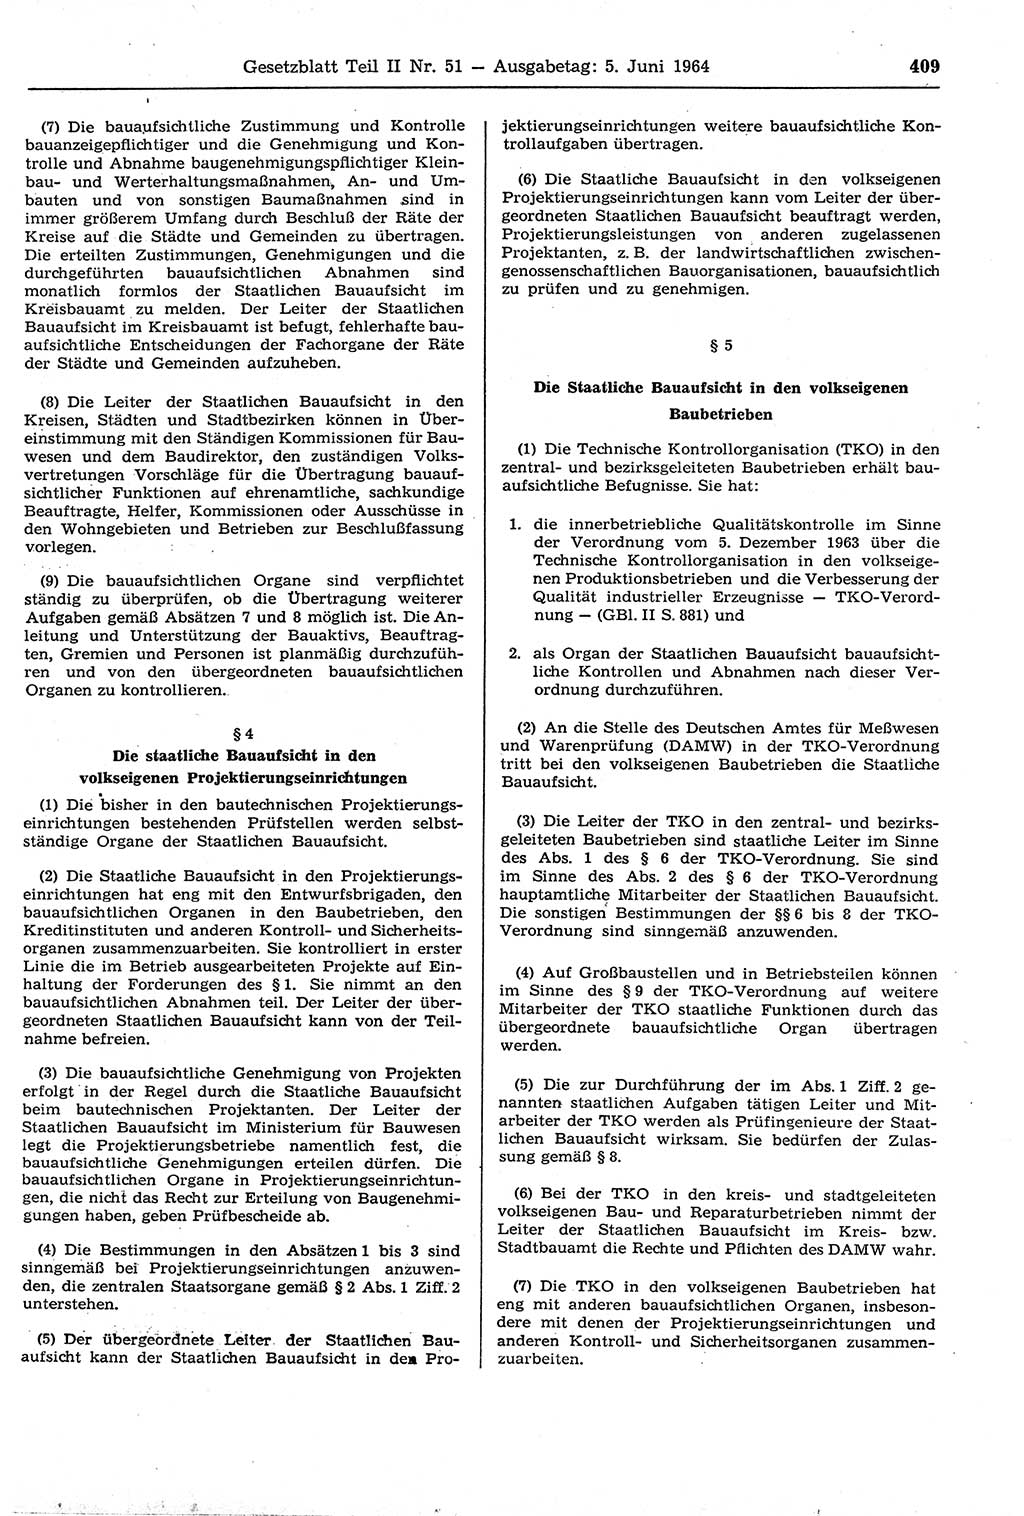 Gesetzblatt (GBl.) der Deutschen Demokratischen Republik (DDR) Teil ⅠⅠ 1964, Seite 409 (GBl. DDR ⅠⅠ 1964, S. 409)